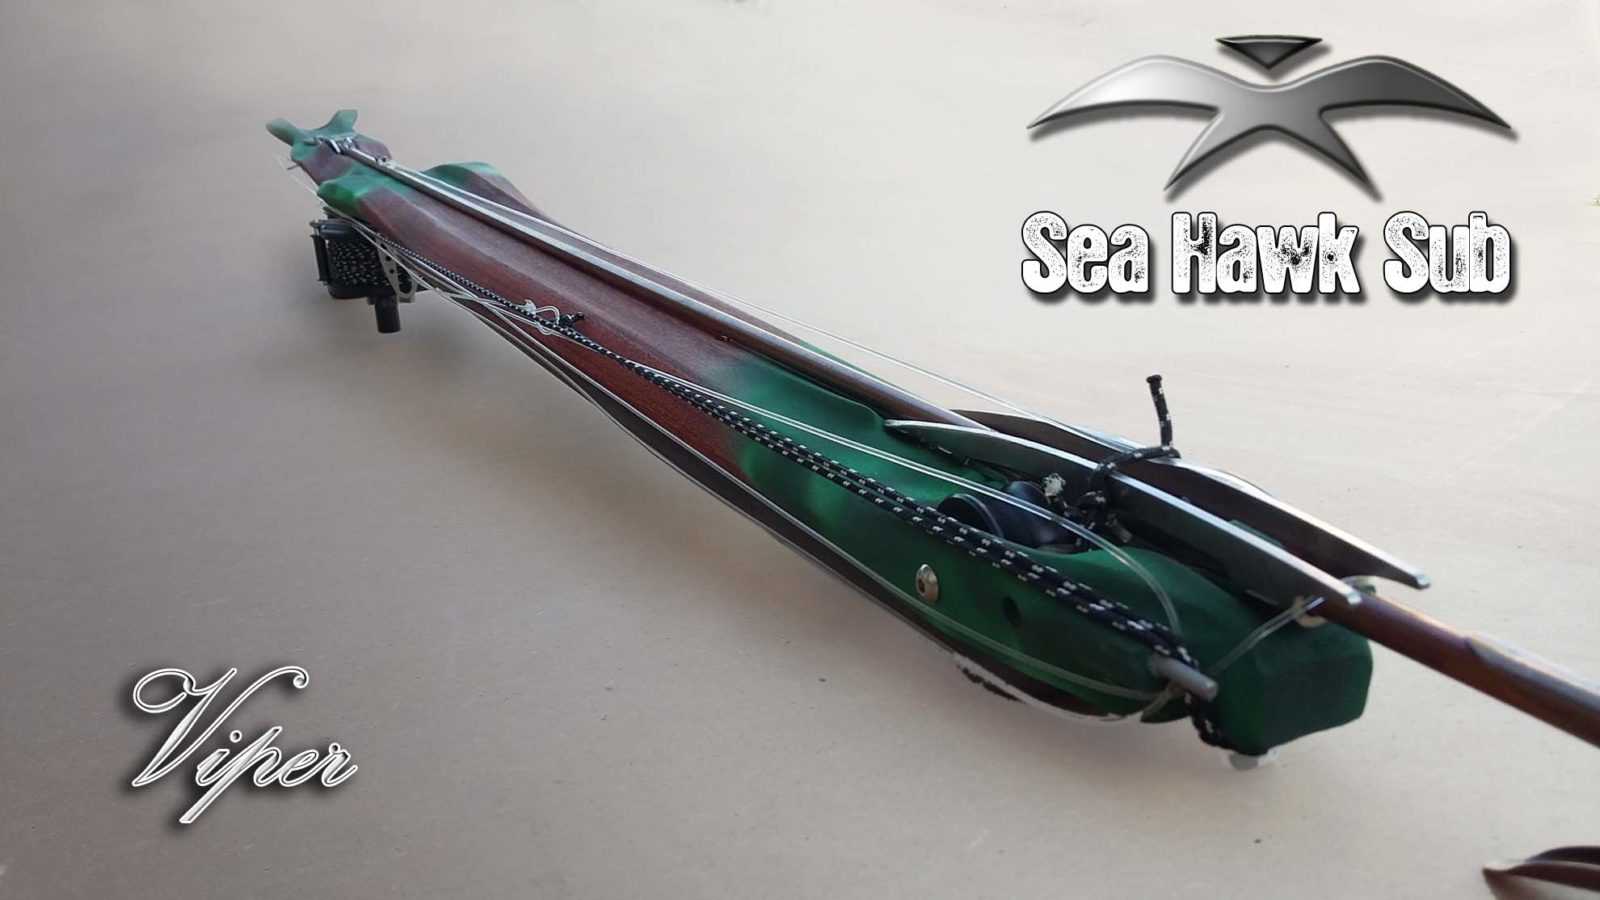 Seahawksub-spearfishing-pescasub-viper-010